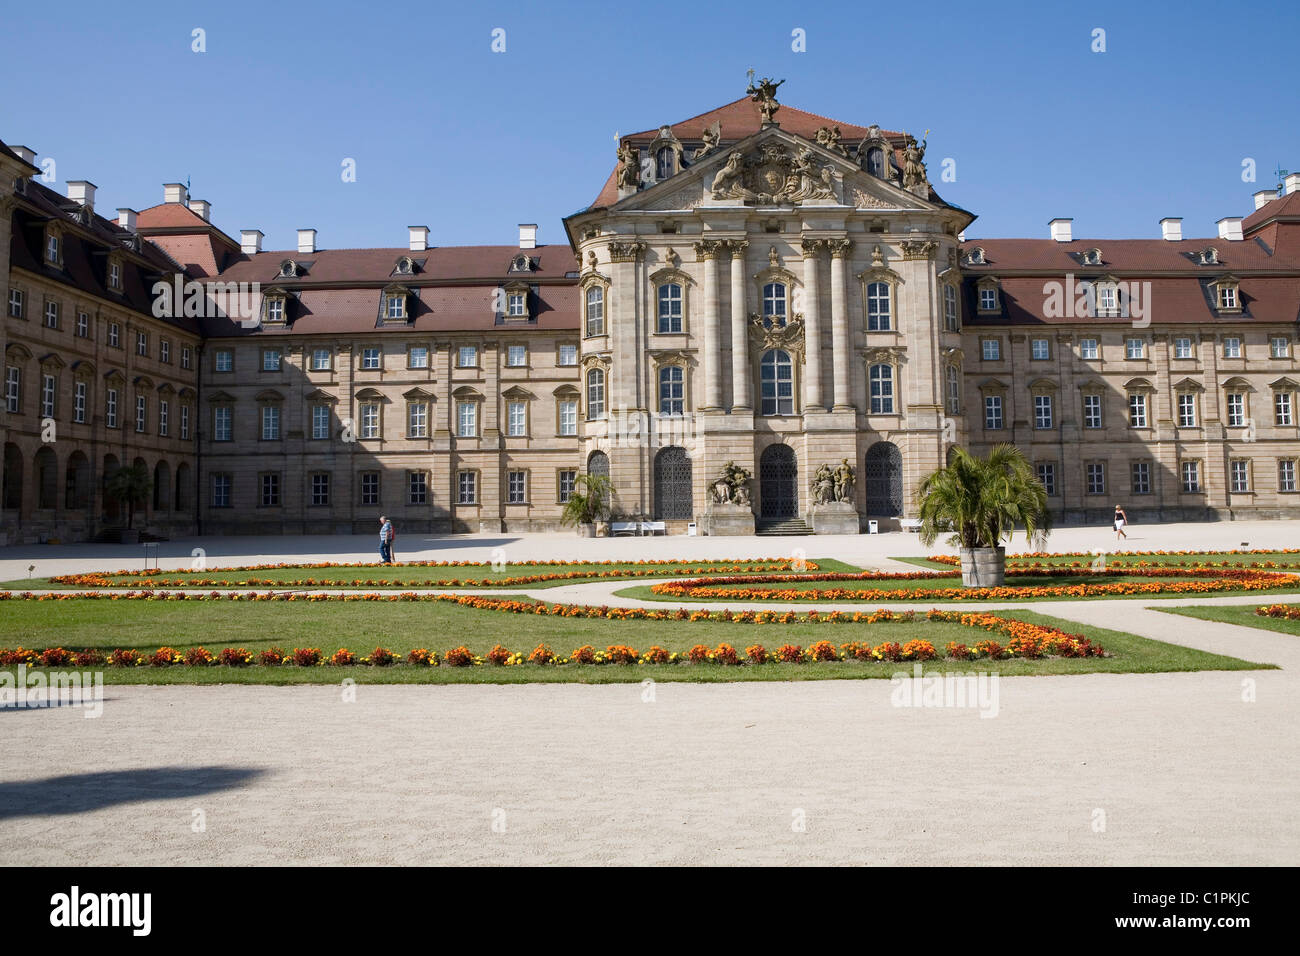 Germany, Bavaria, Schloss Weissenstein and formal garden Stock Photo